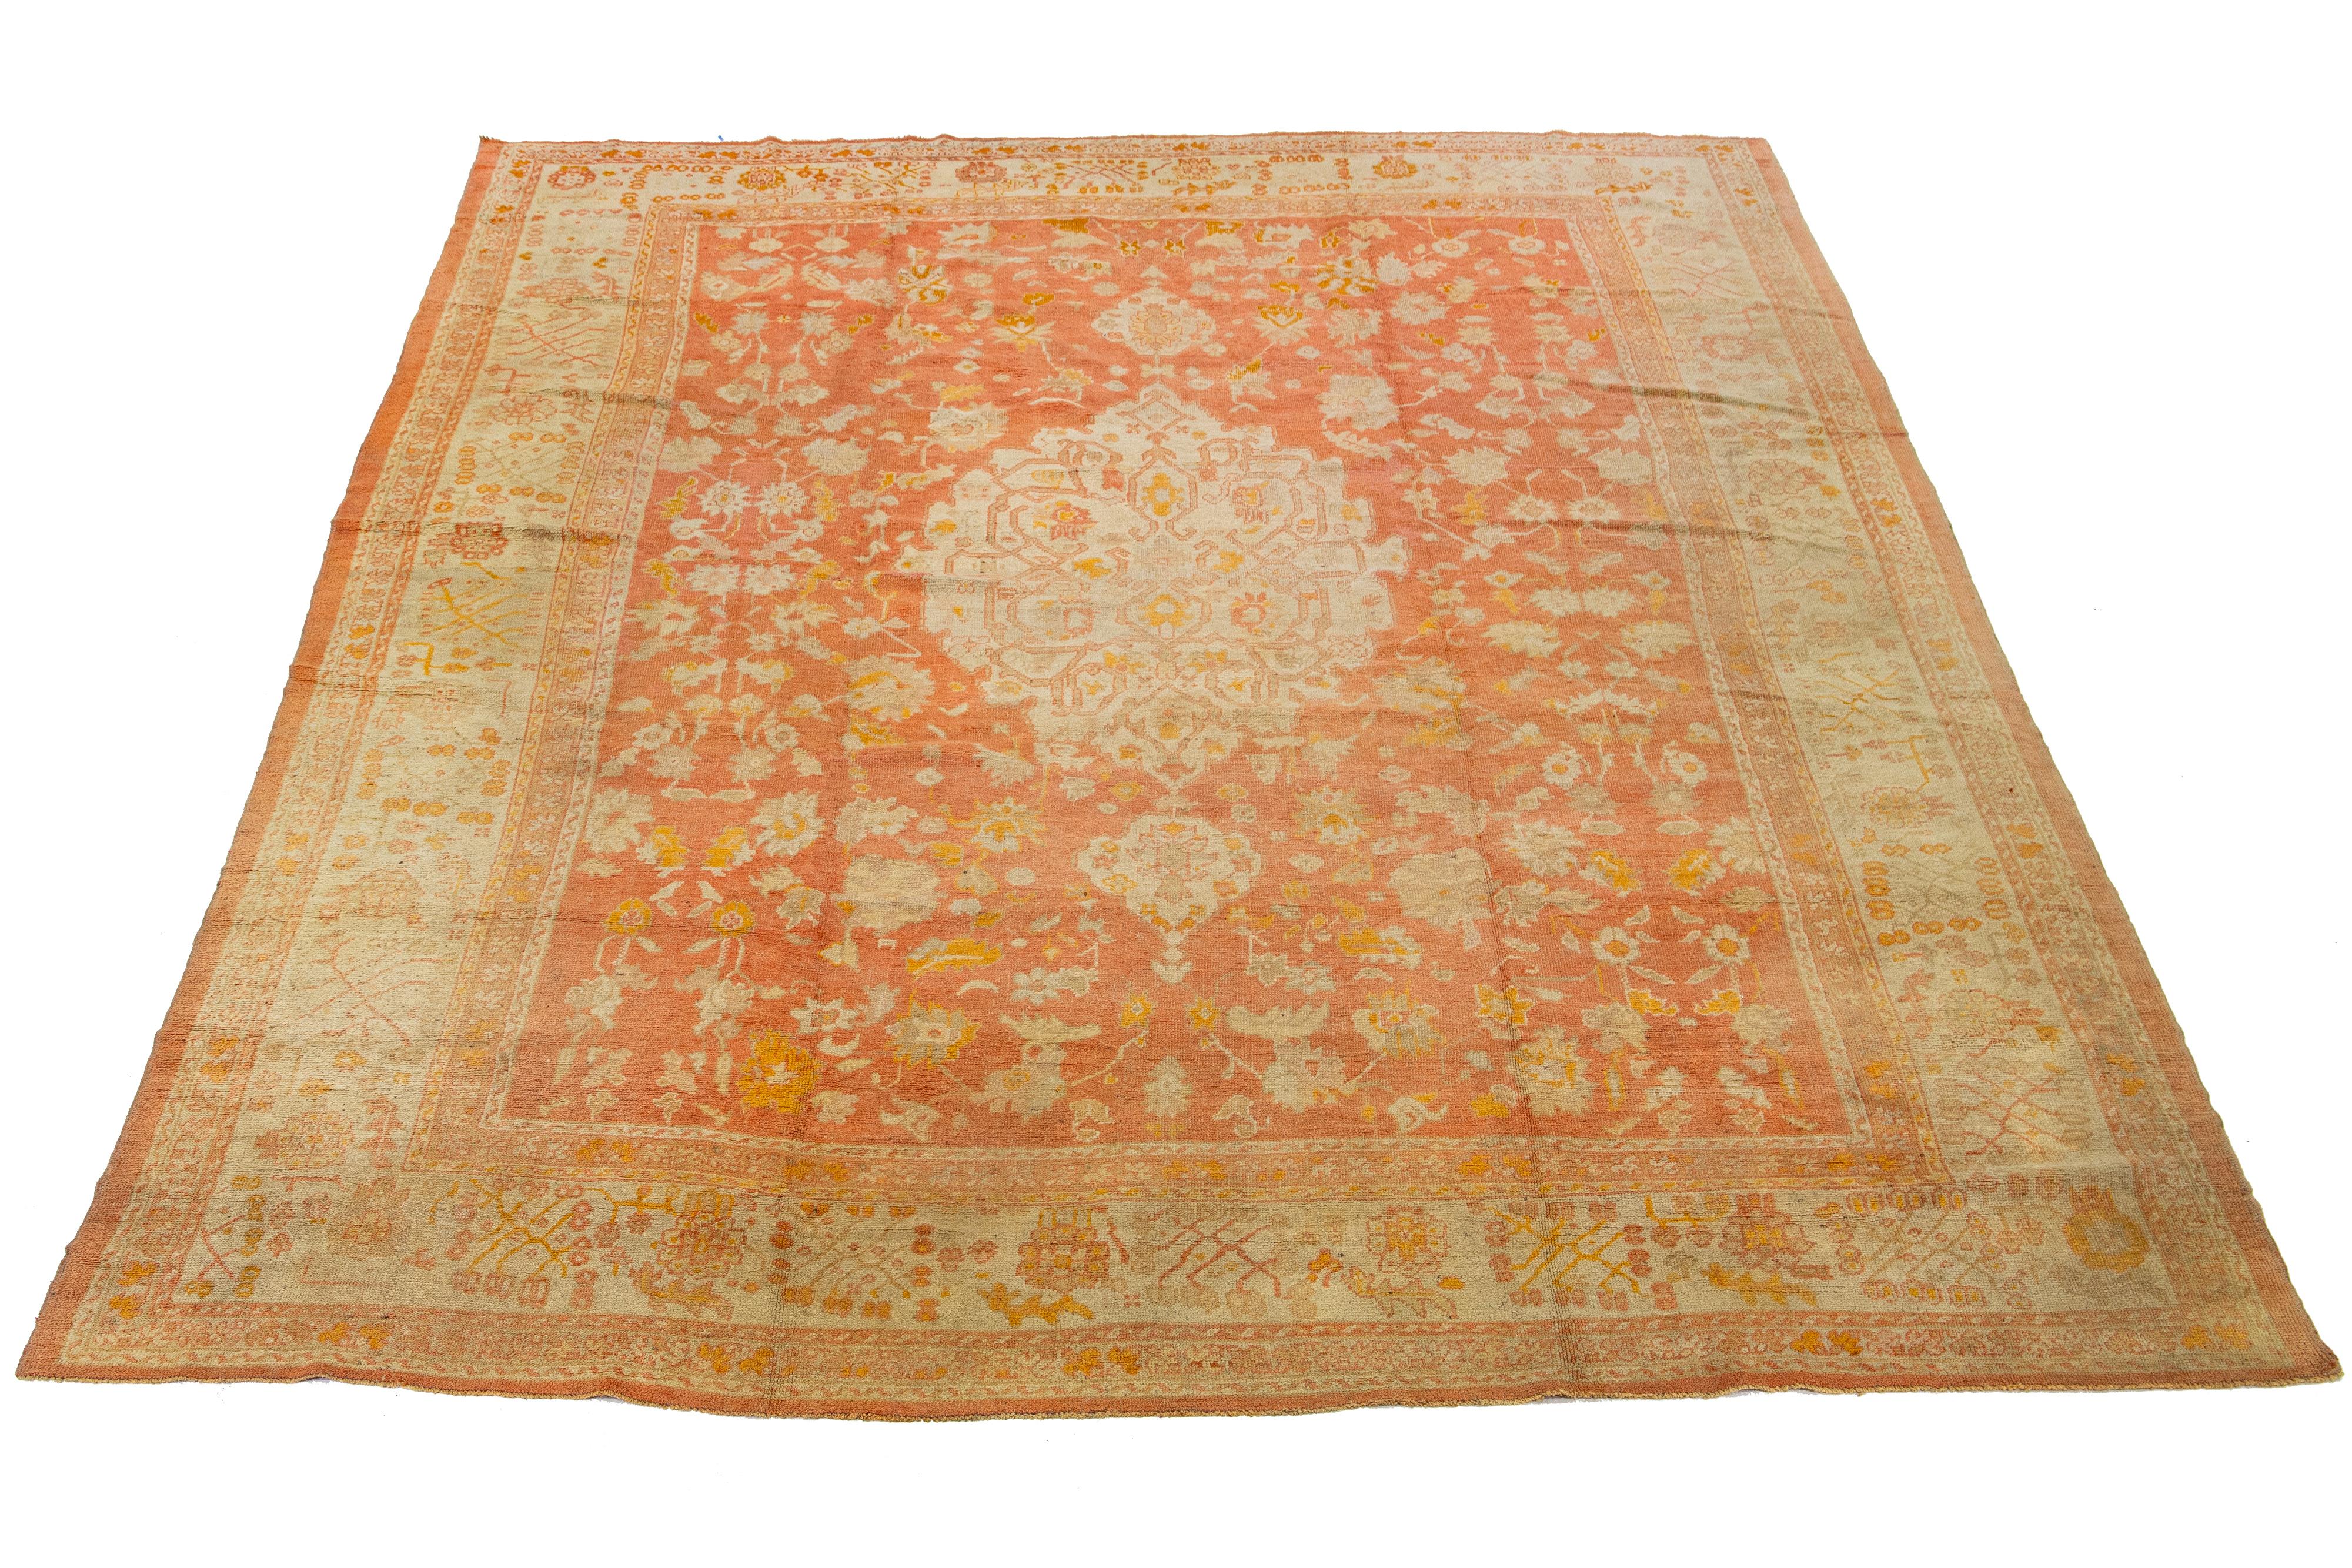 Magnifique tapis turc ancien en laine Oushak noué à la main, avec un champ orange clair et une bordure ivoire présentant un motif floral en médaillon.

Ce tapis mesure 13'5' x 17'4